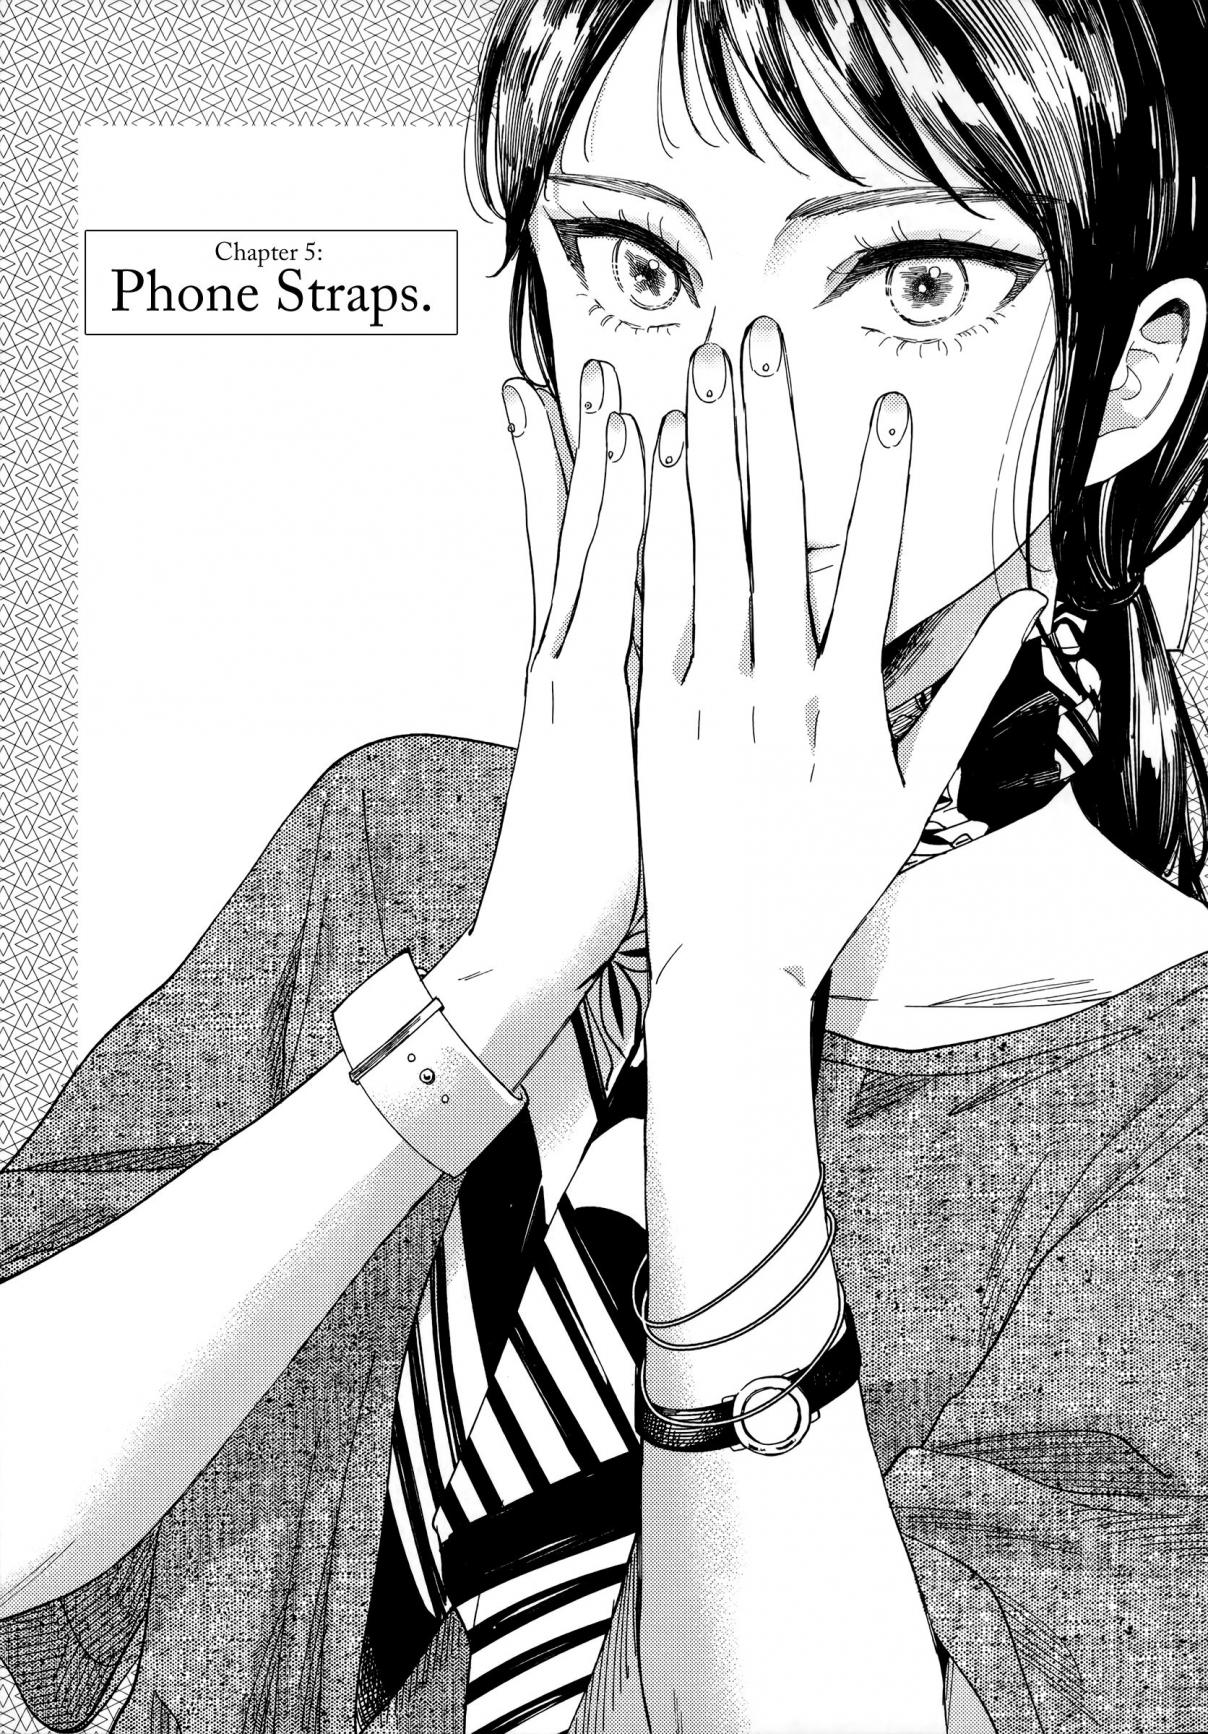 Watashi no Shounen Vol. 1 Ch. 5 Phone Straps